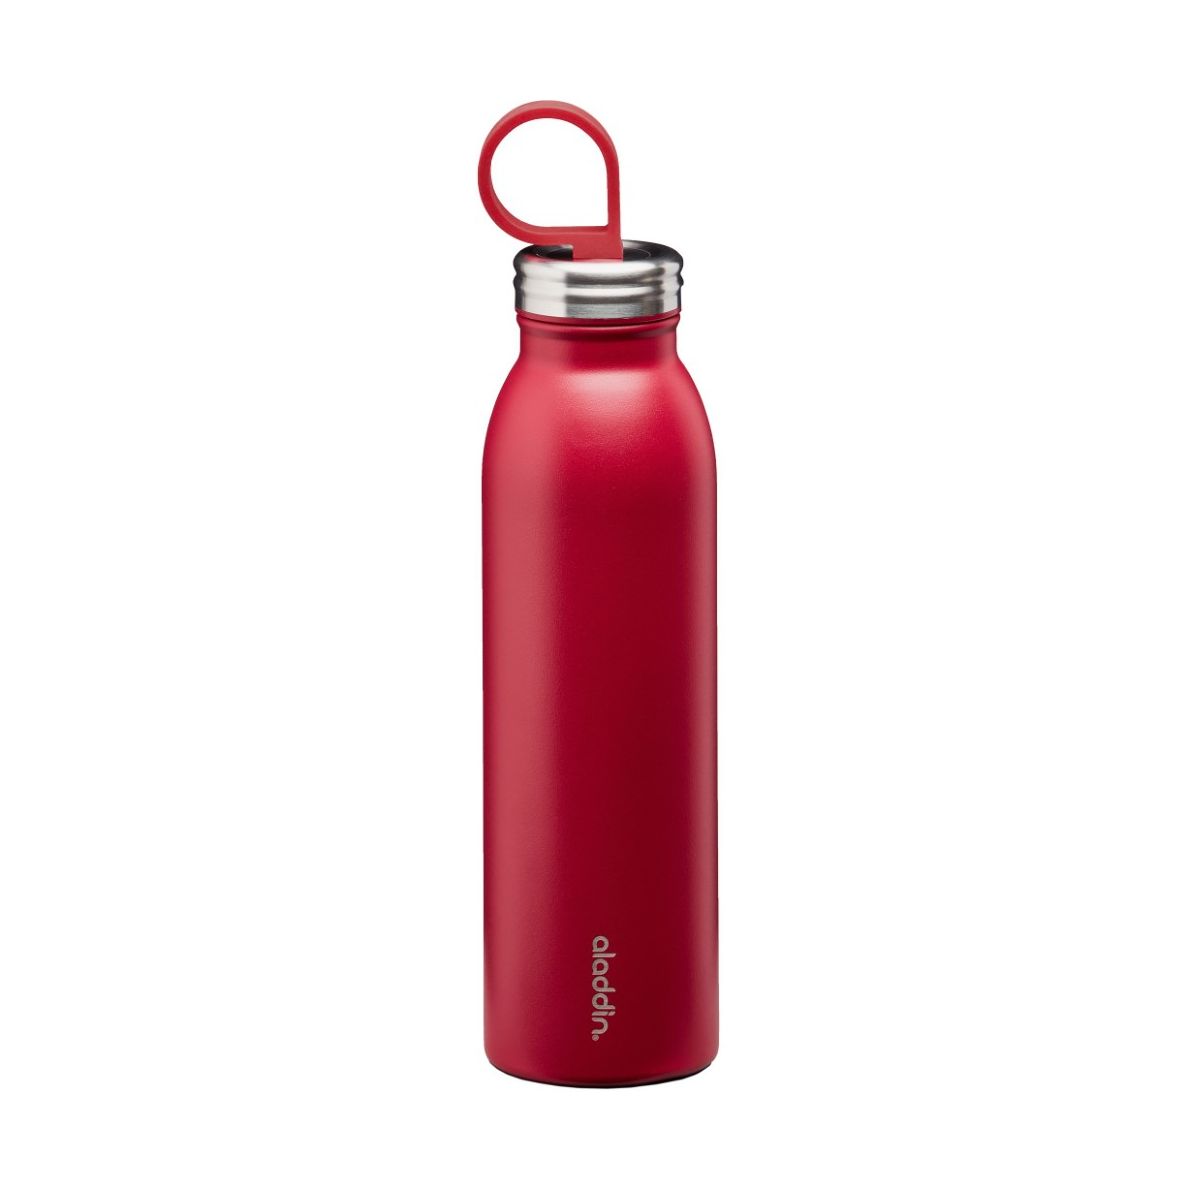 زجاجة ماء ثيرموفاك مبردة من علاء الدين - ٠.٥٥ لتر أحمر كرزي